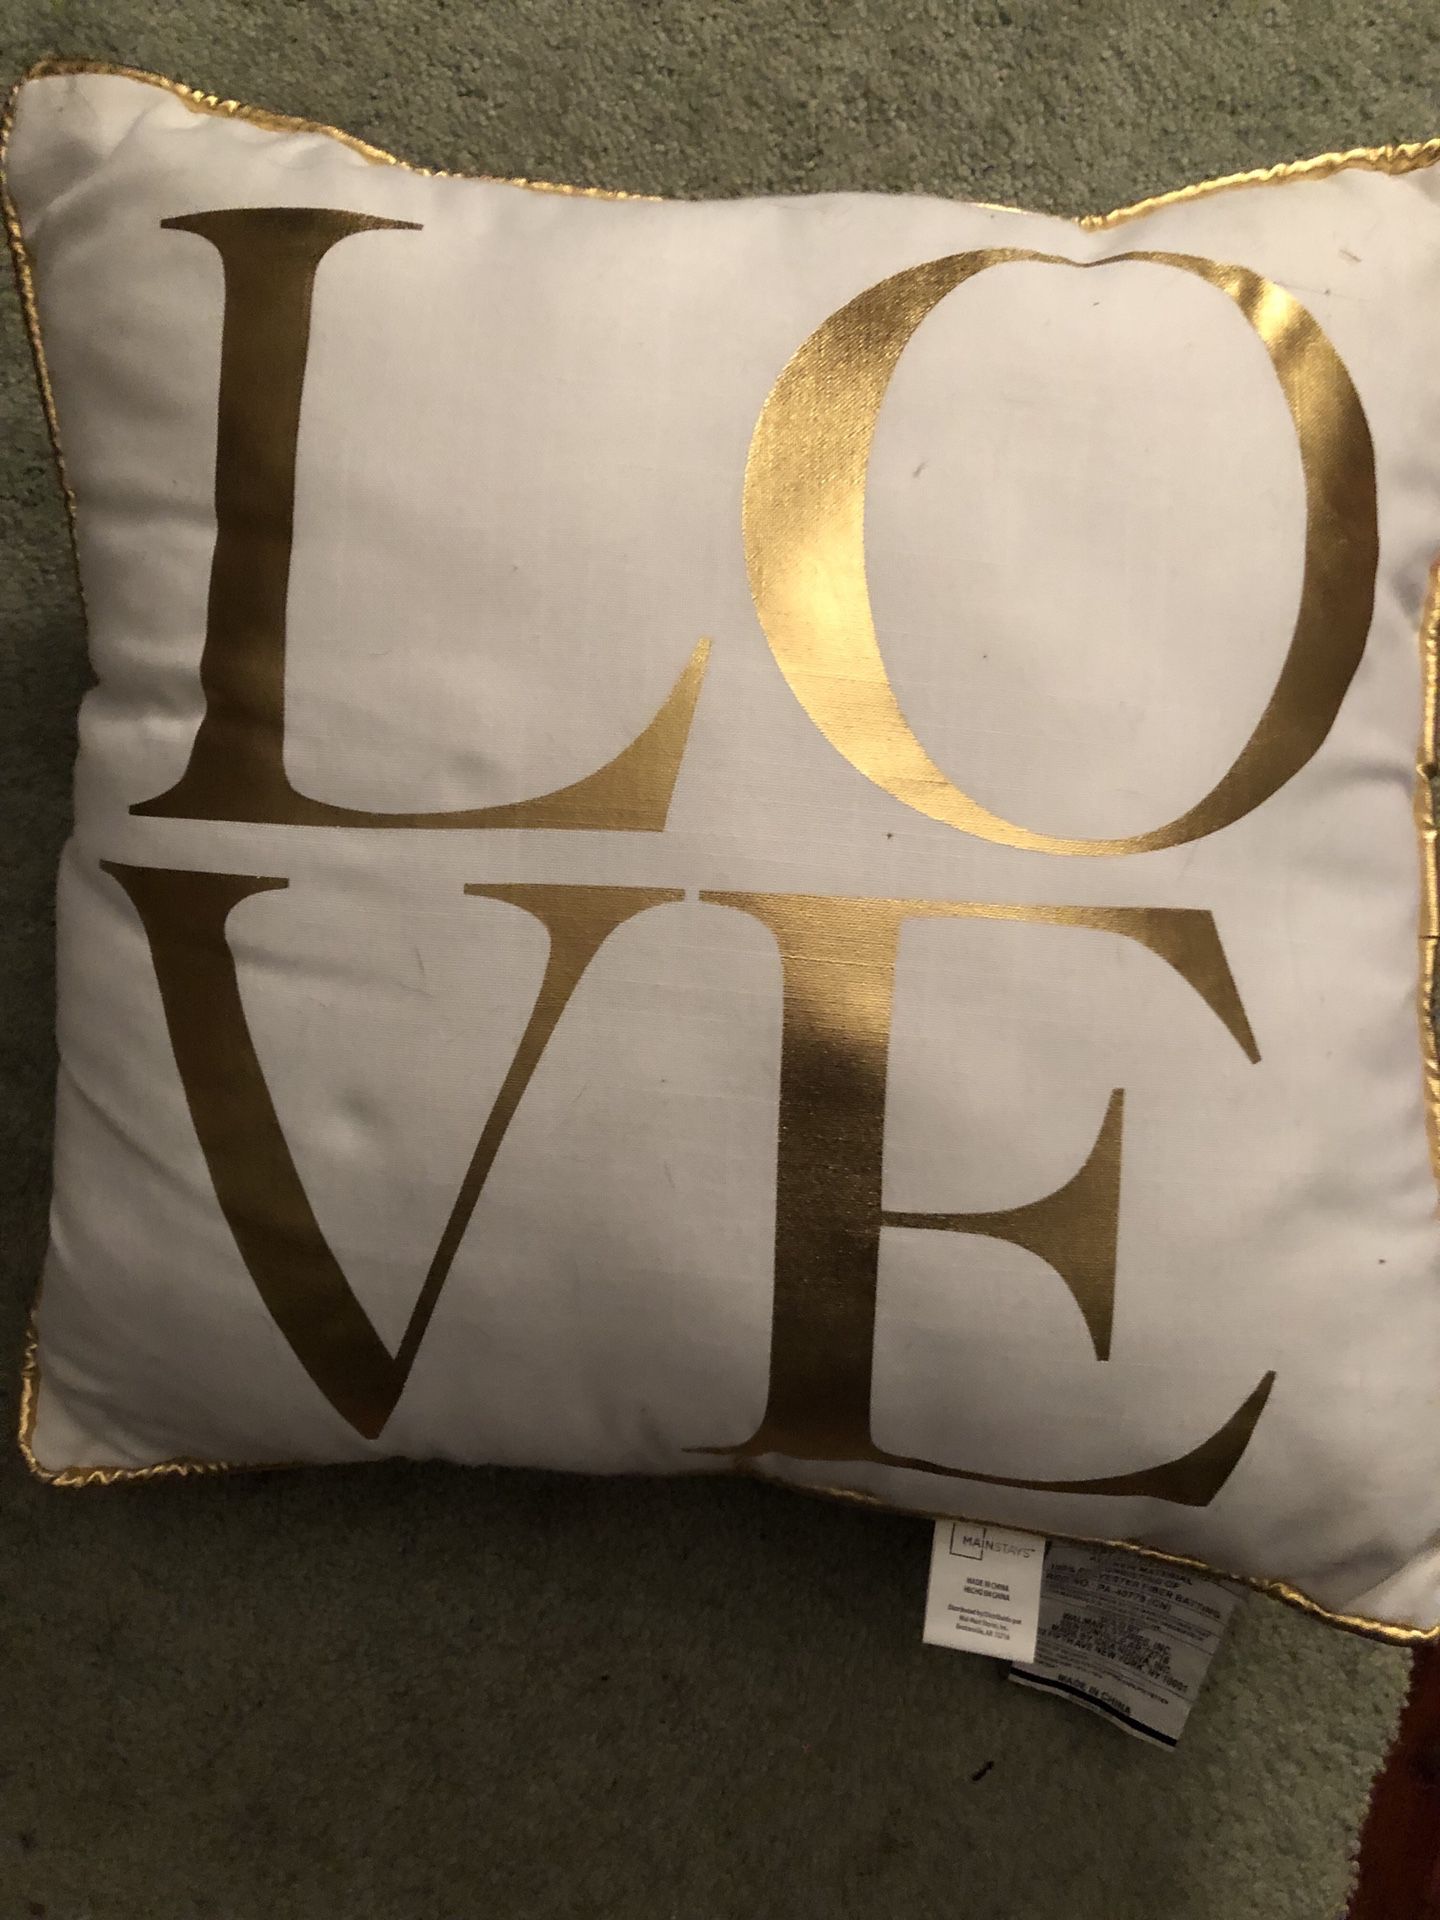 LOVE Pillow